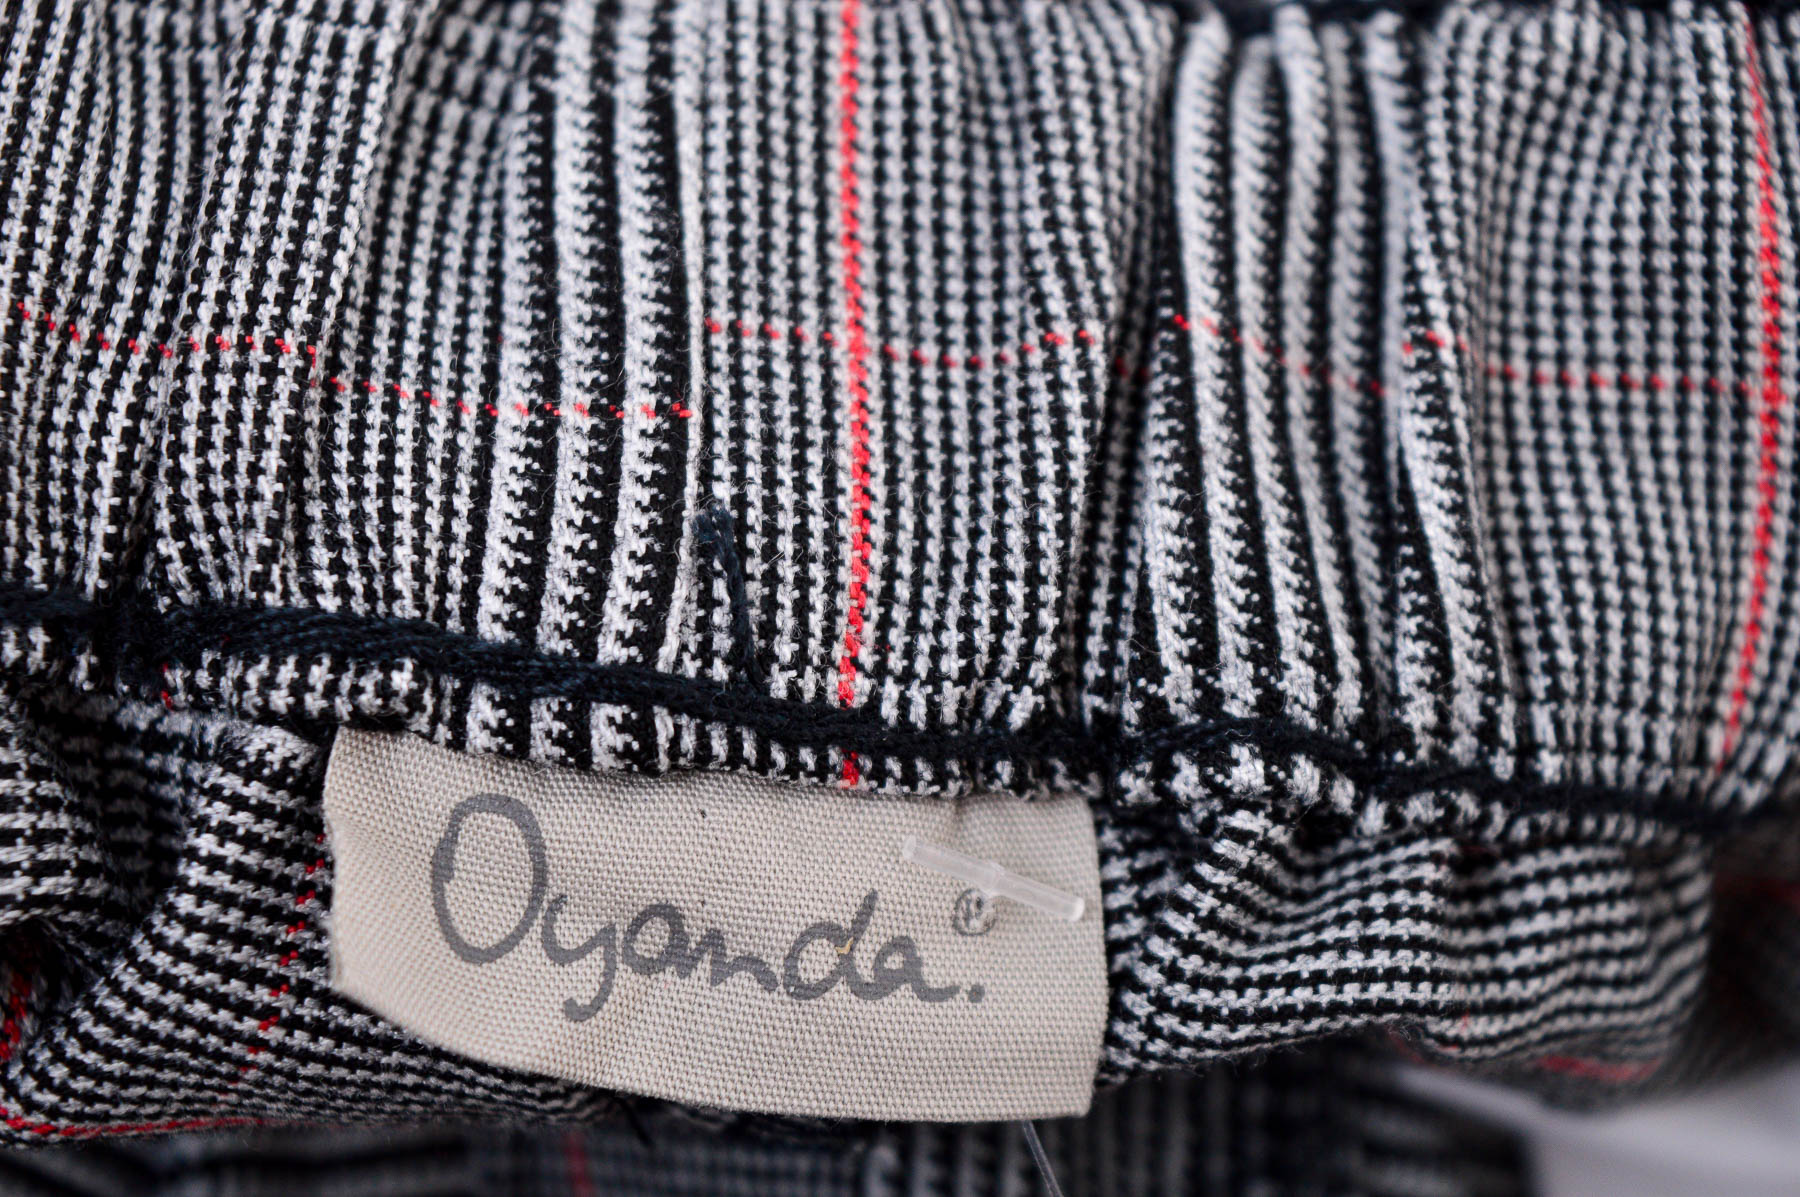 Women's trousers - Oyanda - 2